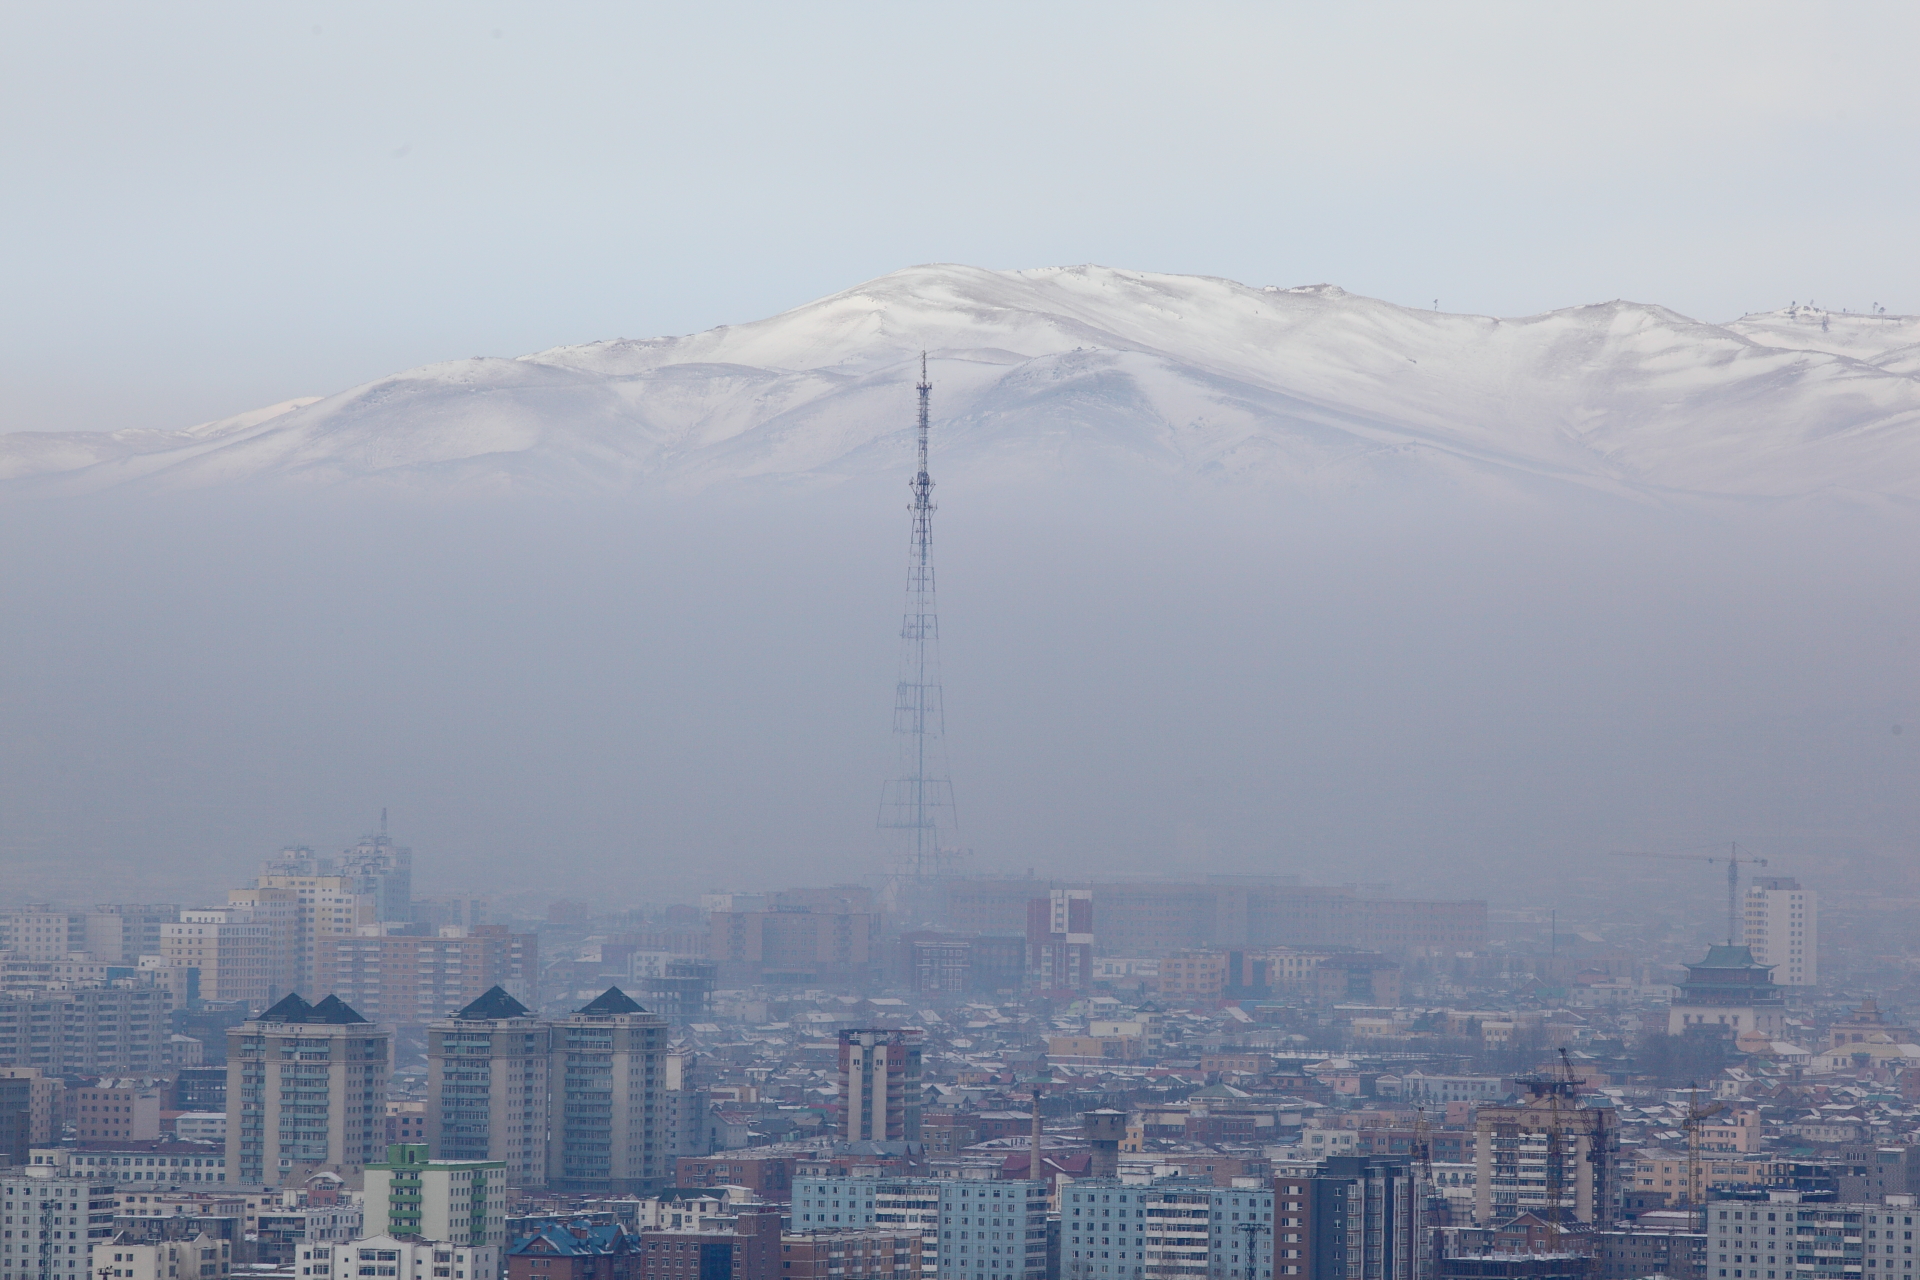 smog filled skyline of Ulaan Baatar